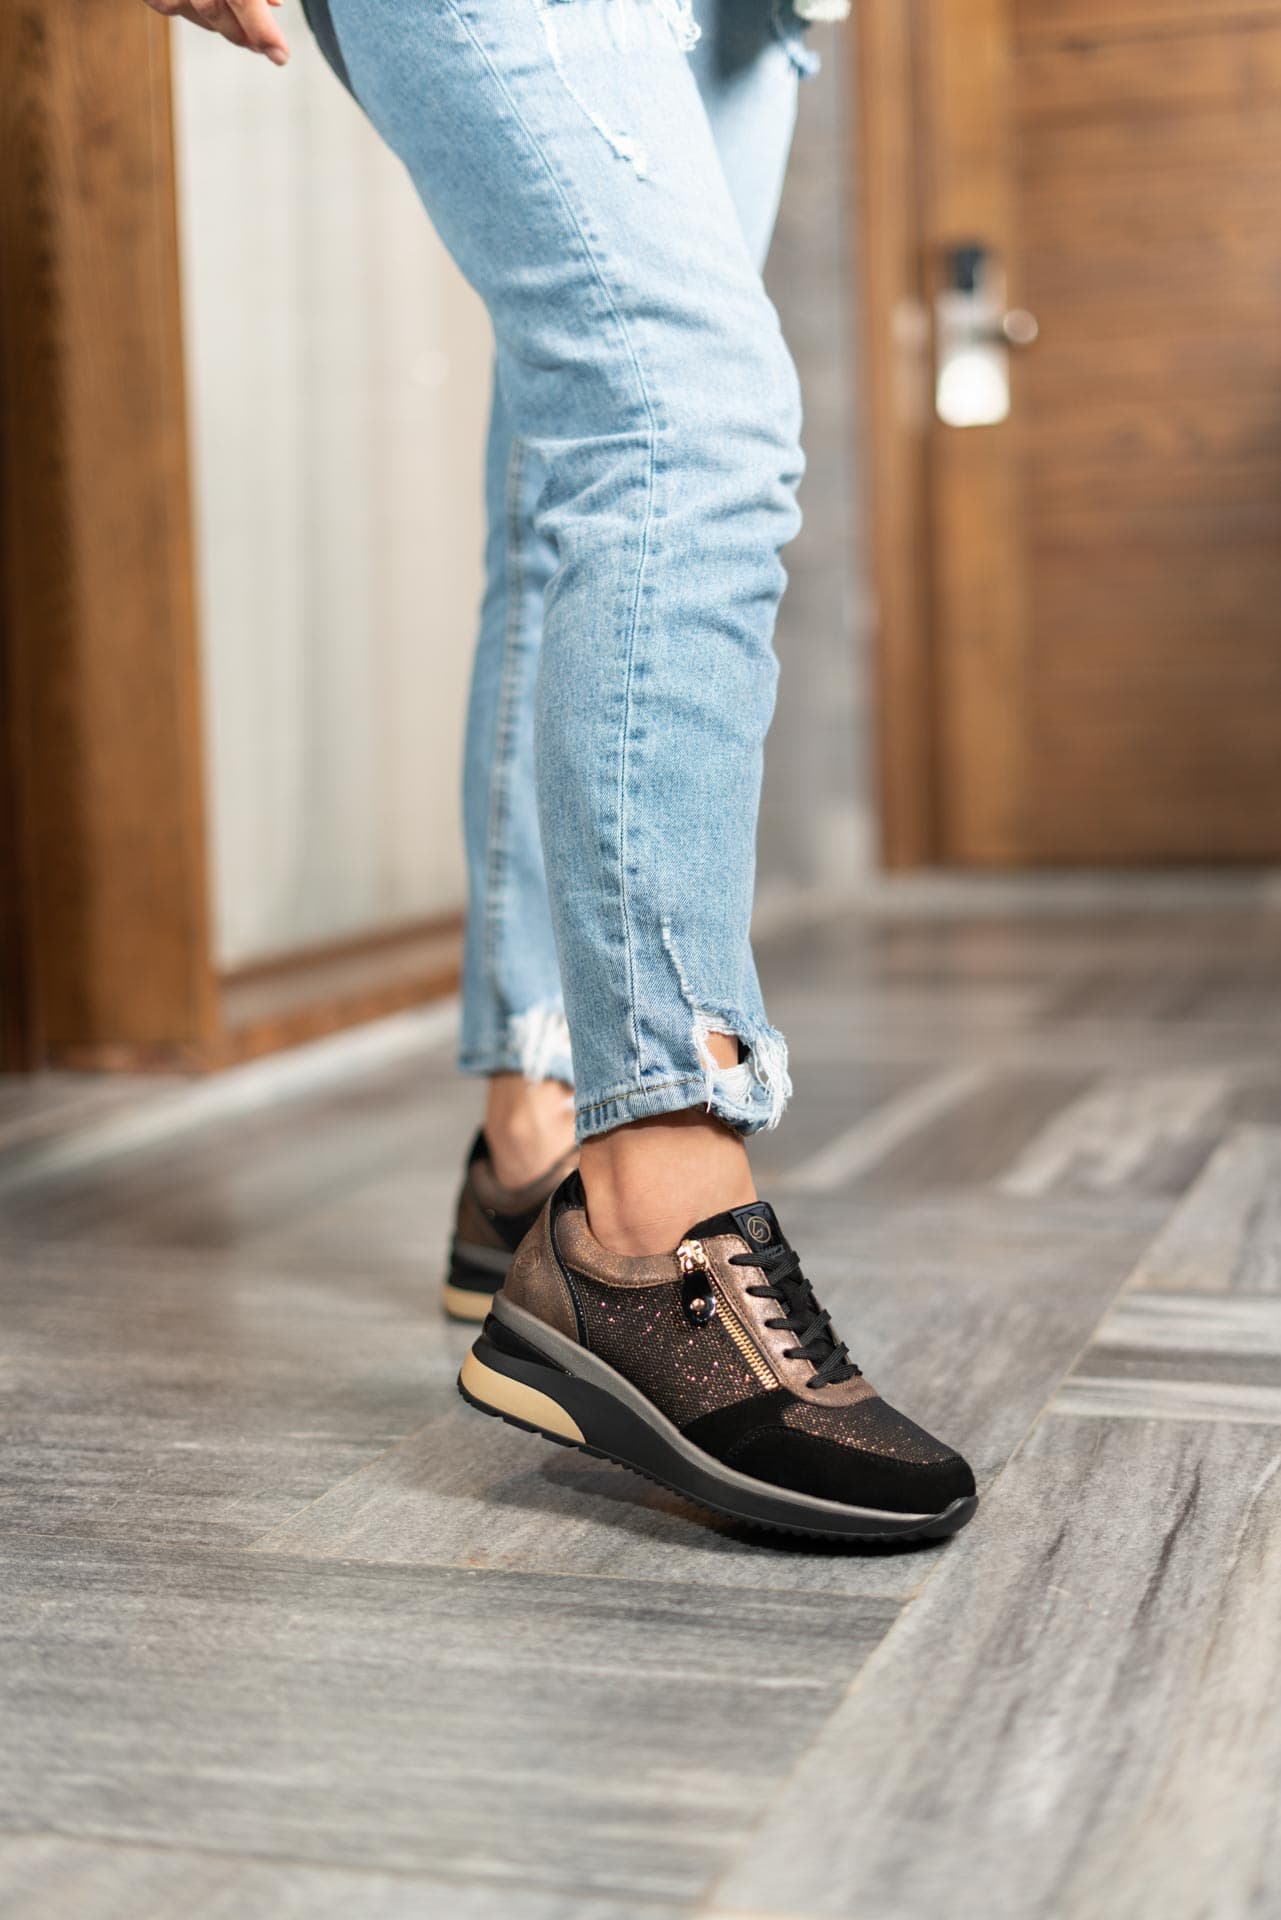 Schwarze Sneaker aus Veloursleder und Lederimitat mit Reißverschluss und Schnürung und Wechselfußbett. Passend zu den Schuhen trägt die Frau eine ripped Jeans.